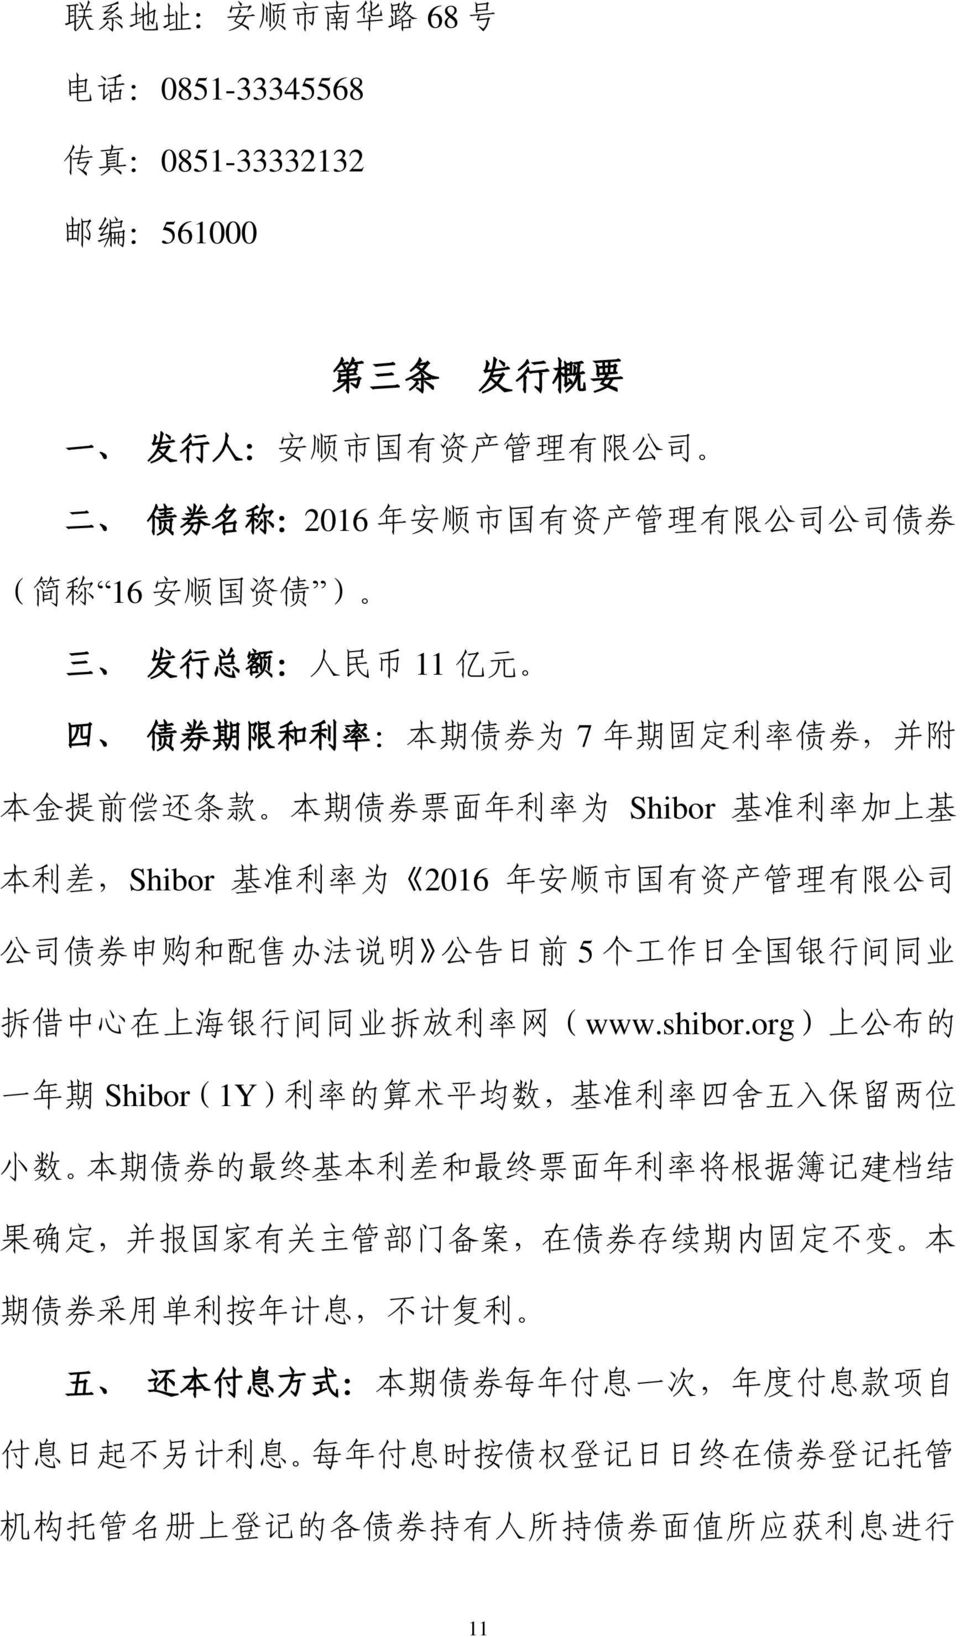 购 和 配 售 办 法 说 明 公 告 日 前 5 个 工 作 日 全 国 银 行 间 同 业 拆 借 中 心 在 上 海 银 行 间 同 业 拆 放 利 率 网 (www.shibor.